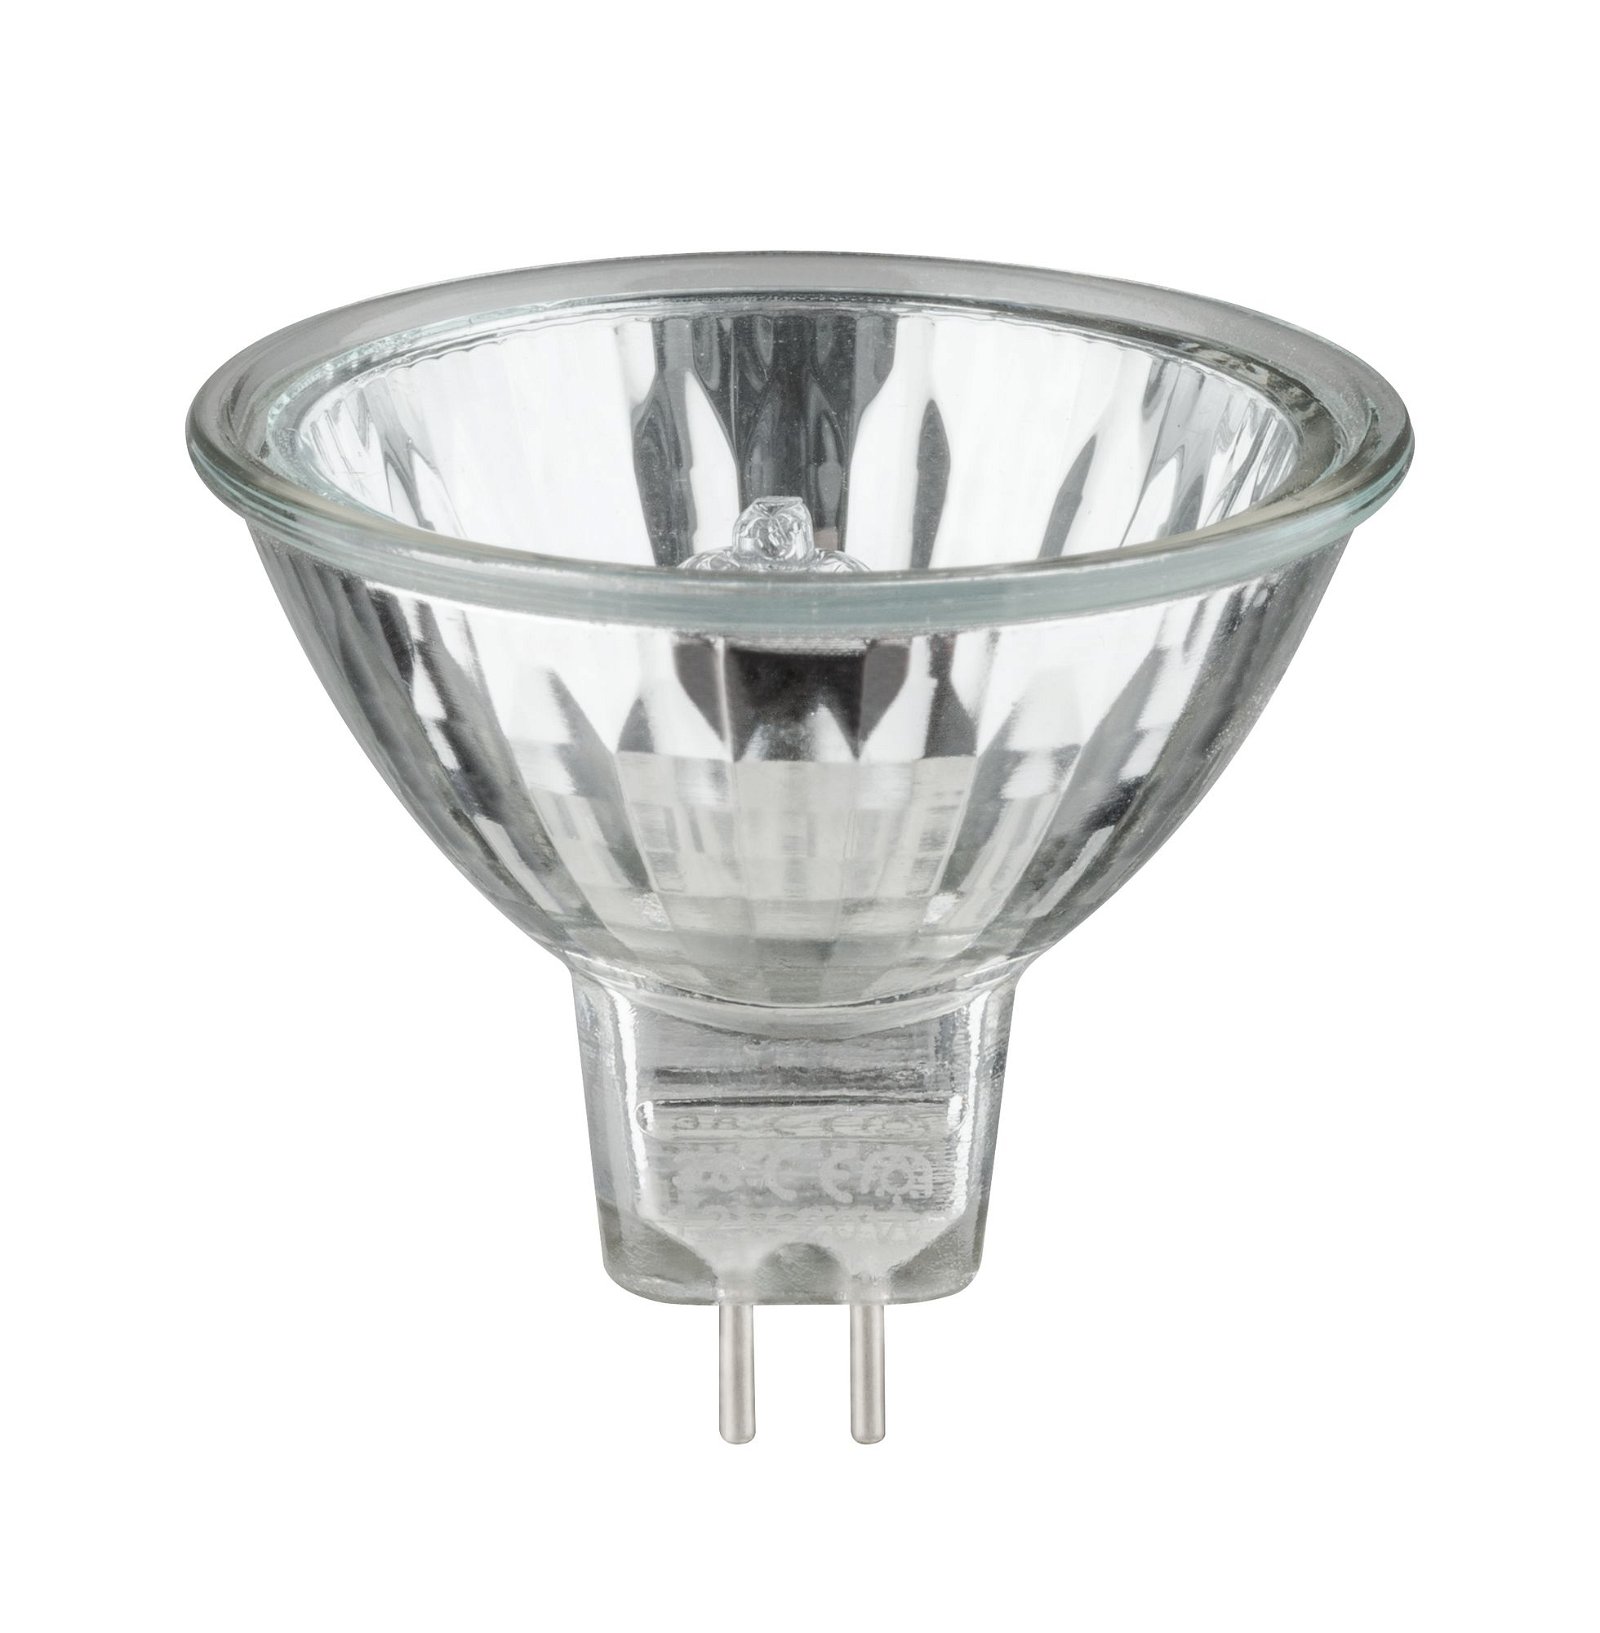 Low-voltage halogen reflector lamp, security 20 W GU5.3, silver 12 V